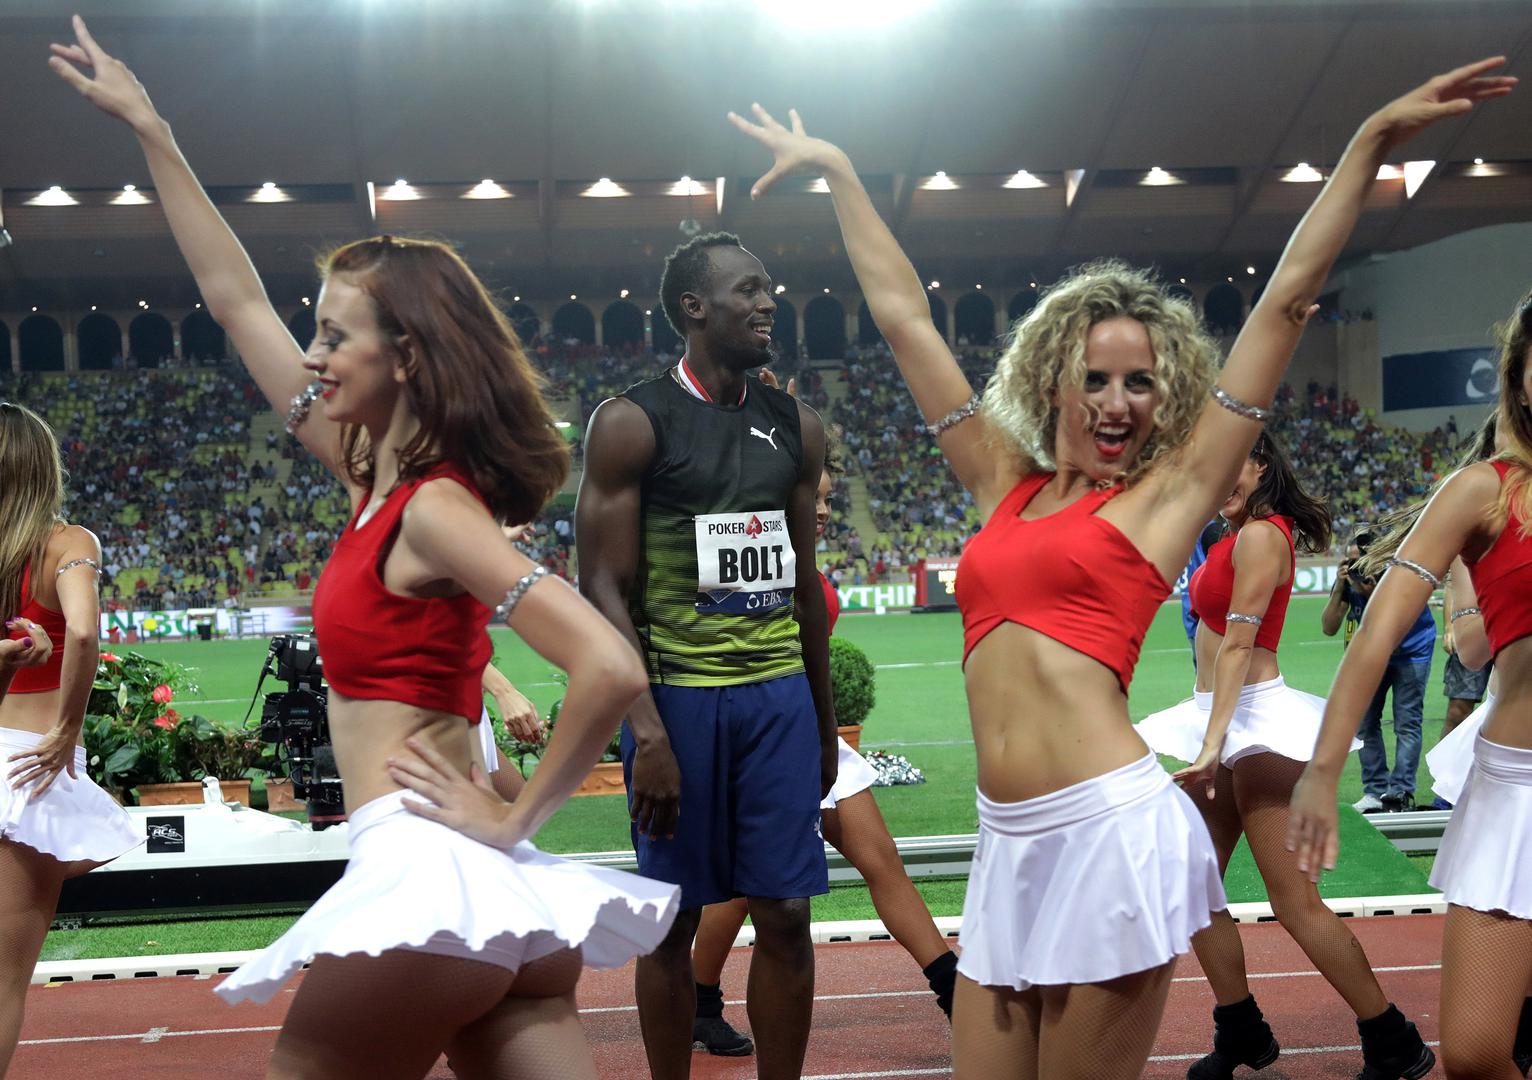 Pobjedu u Monte Carlu Bolt je proslavio već na stazi plesom s atraktivnim plesačicama.